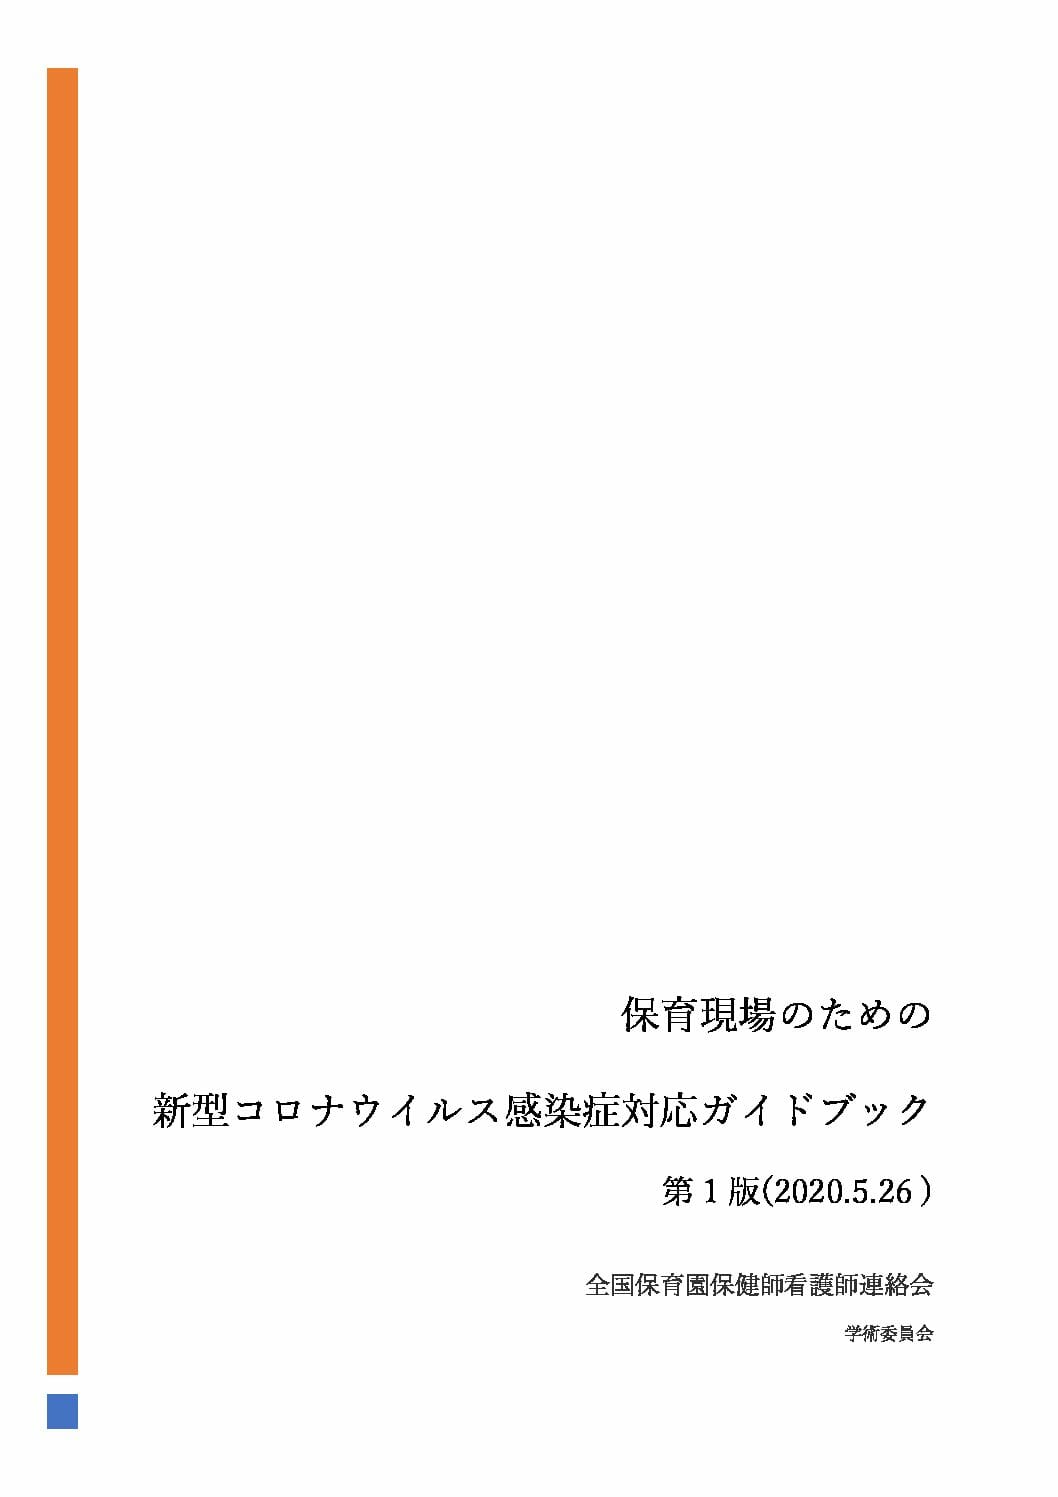 『保育現場のための新型コロナウイルス感染症対応ガイドブック第 1 版(2020.5.26 )』